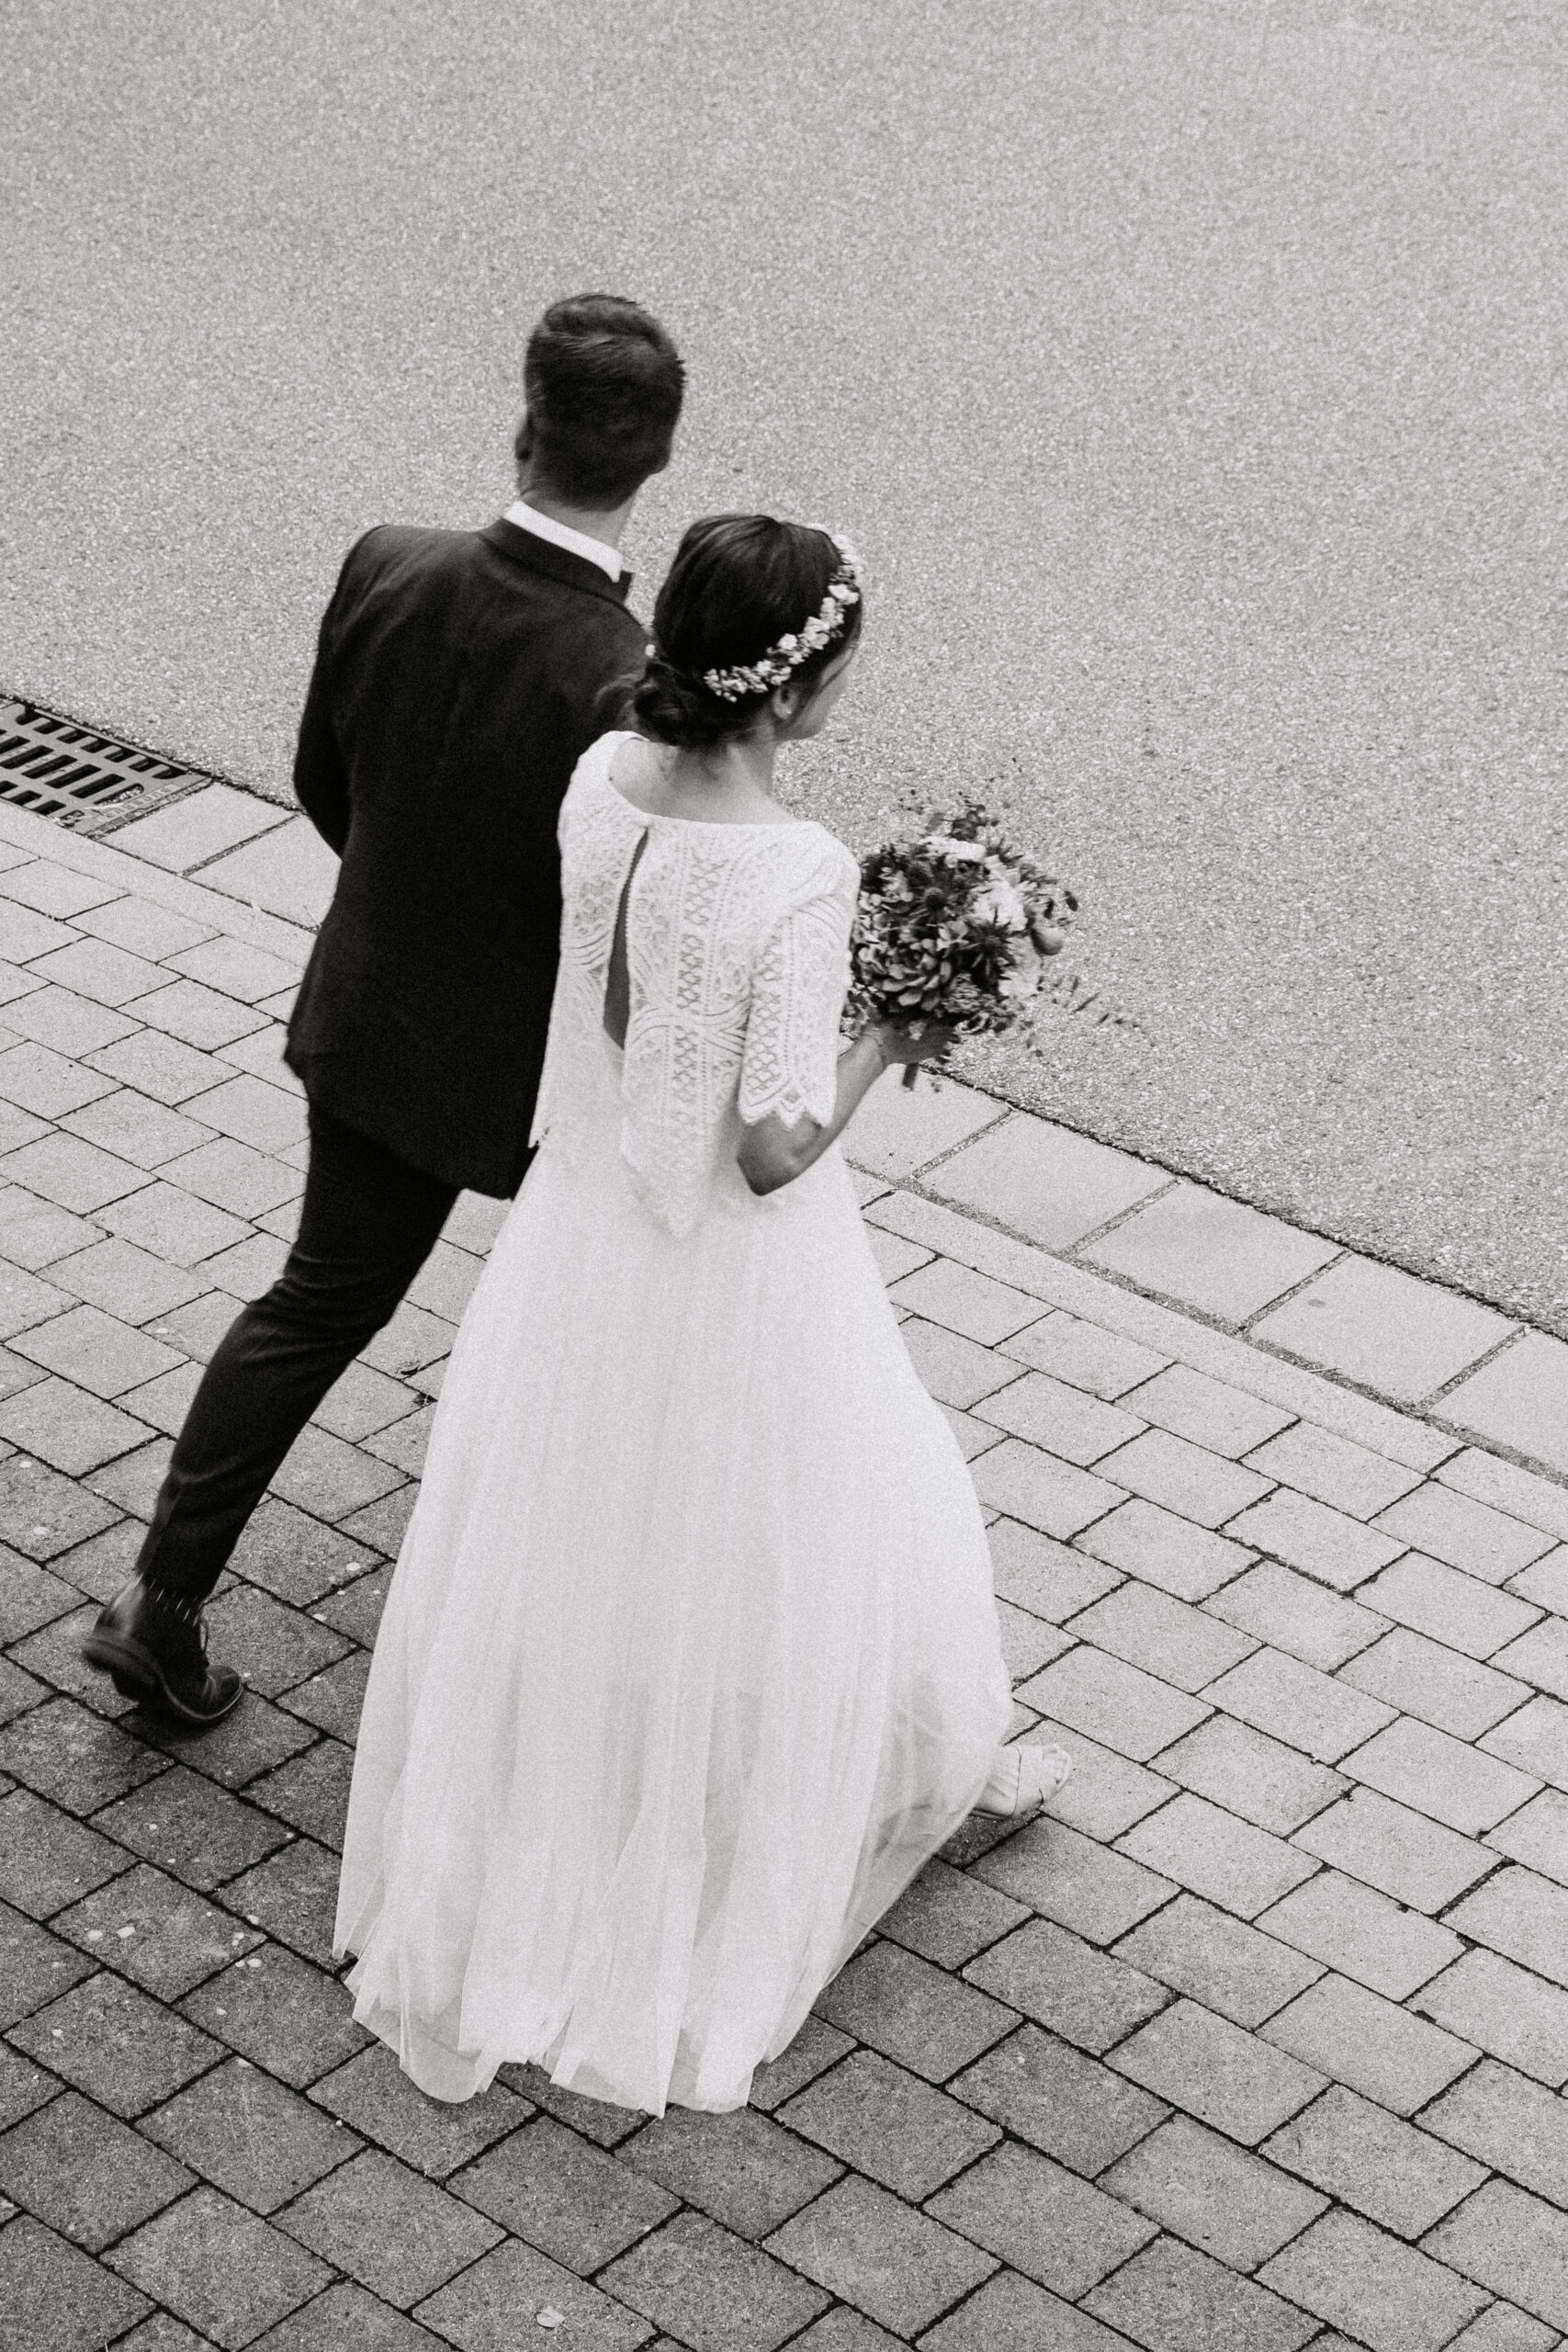 Schwarz weiß Aufnahme vom Brautpaar welches nach der Standesamtlichen Hochzeit händchenhaltend zum Auto läuft